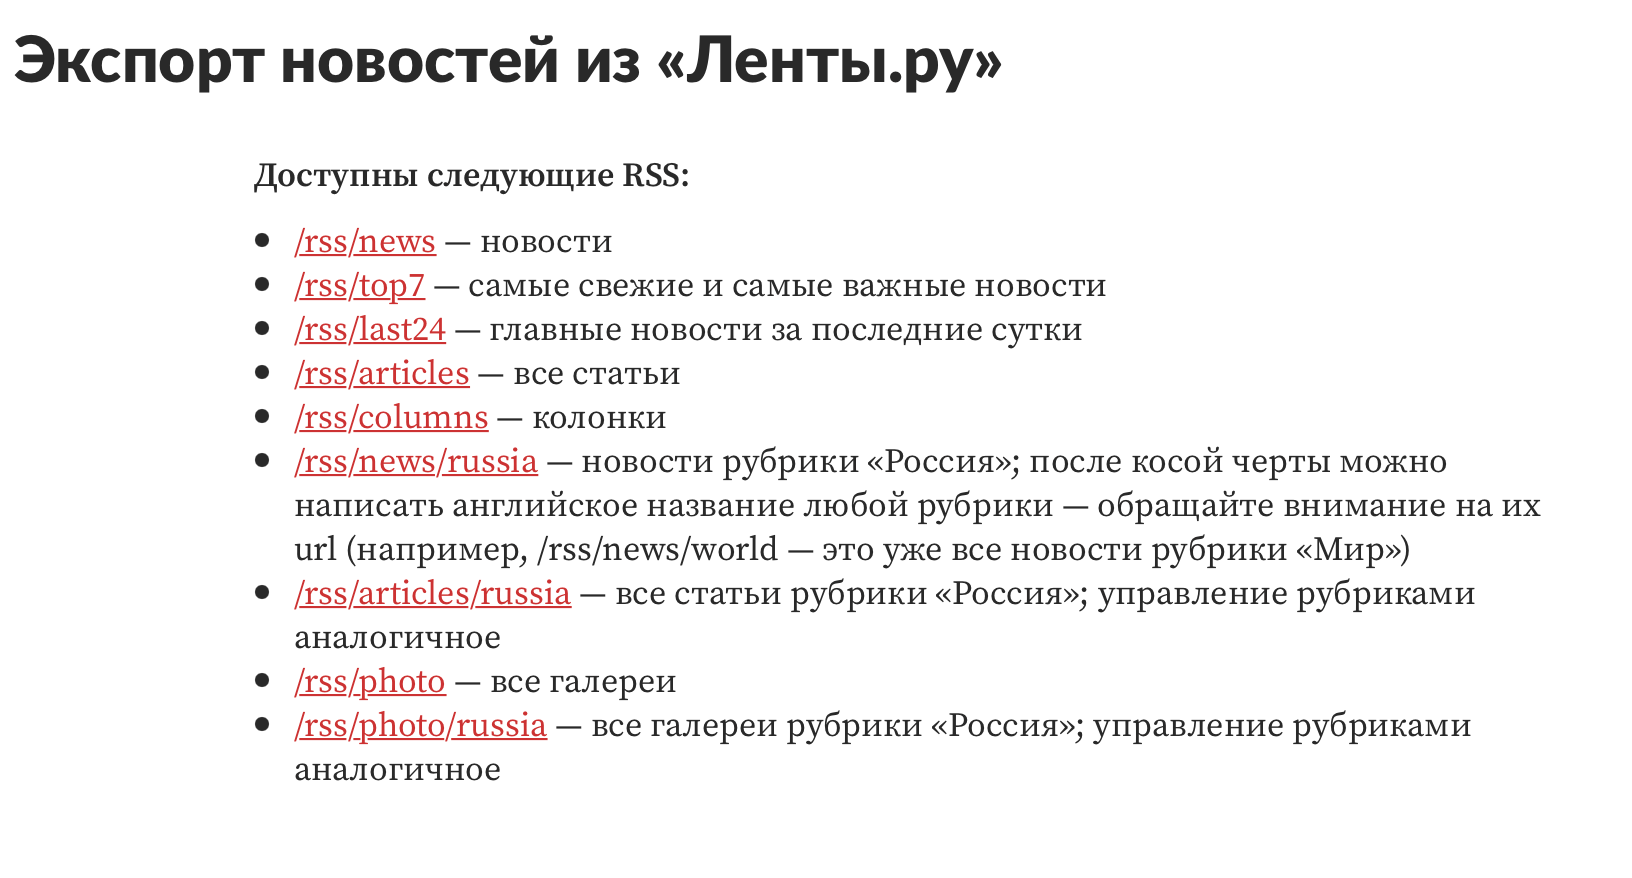 скриншот с сайта «Лента.ру» с перечислением доступных для подписки RSS-лент